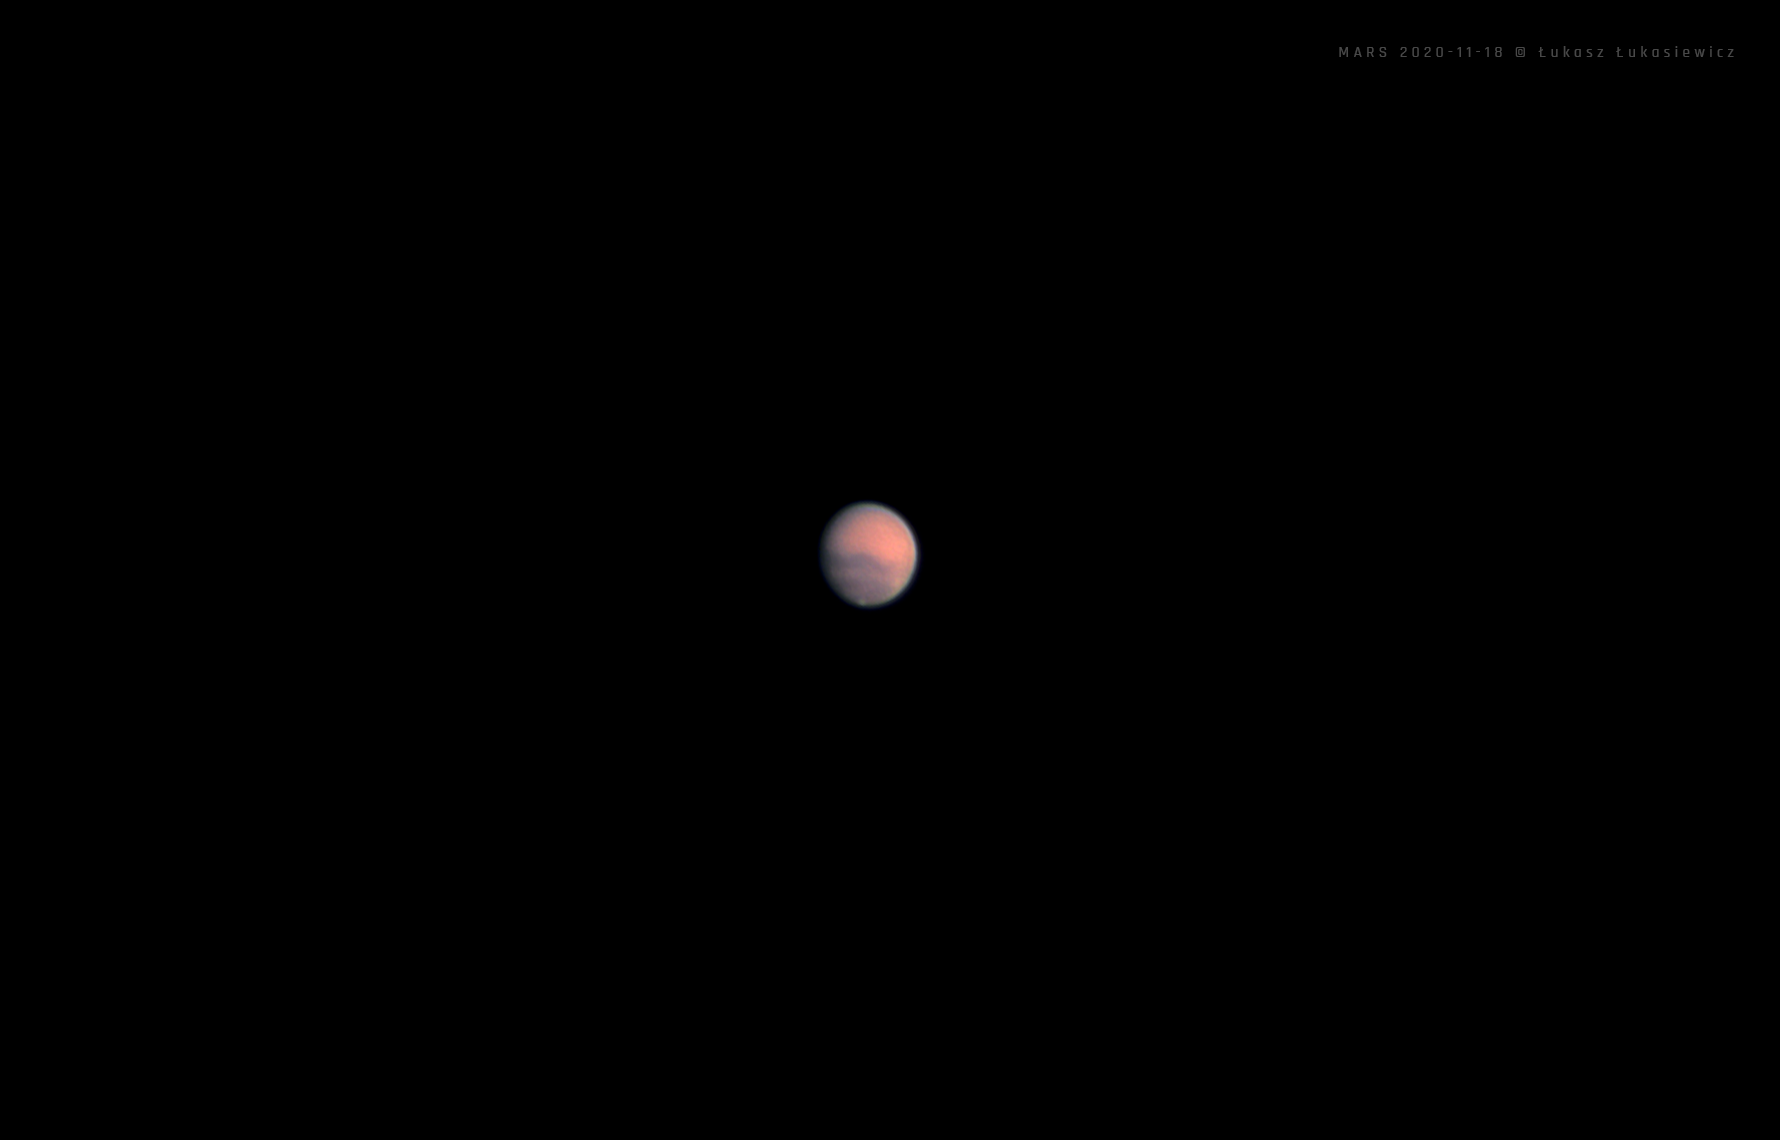 MARS-2020-11-18